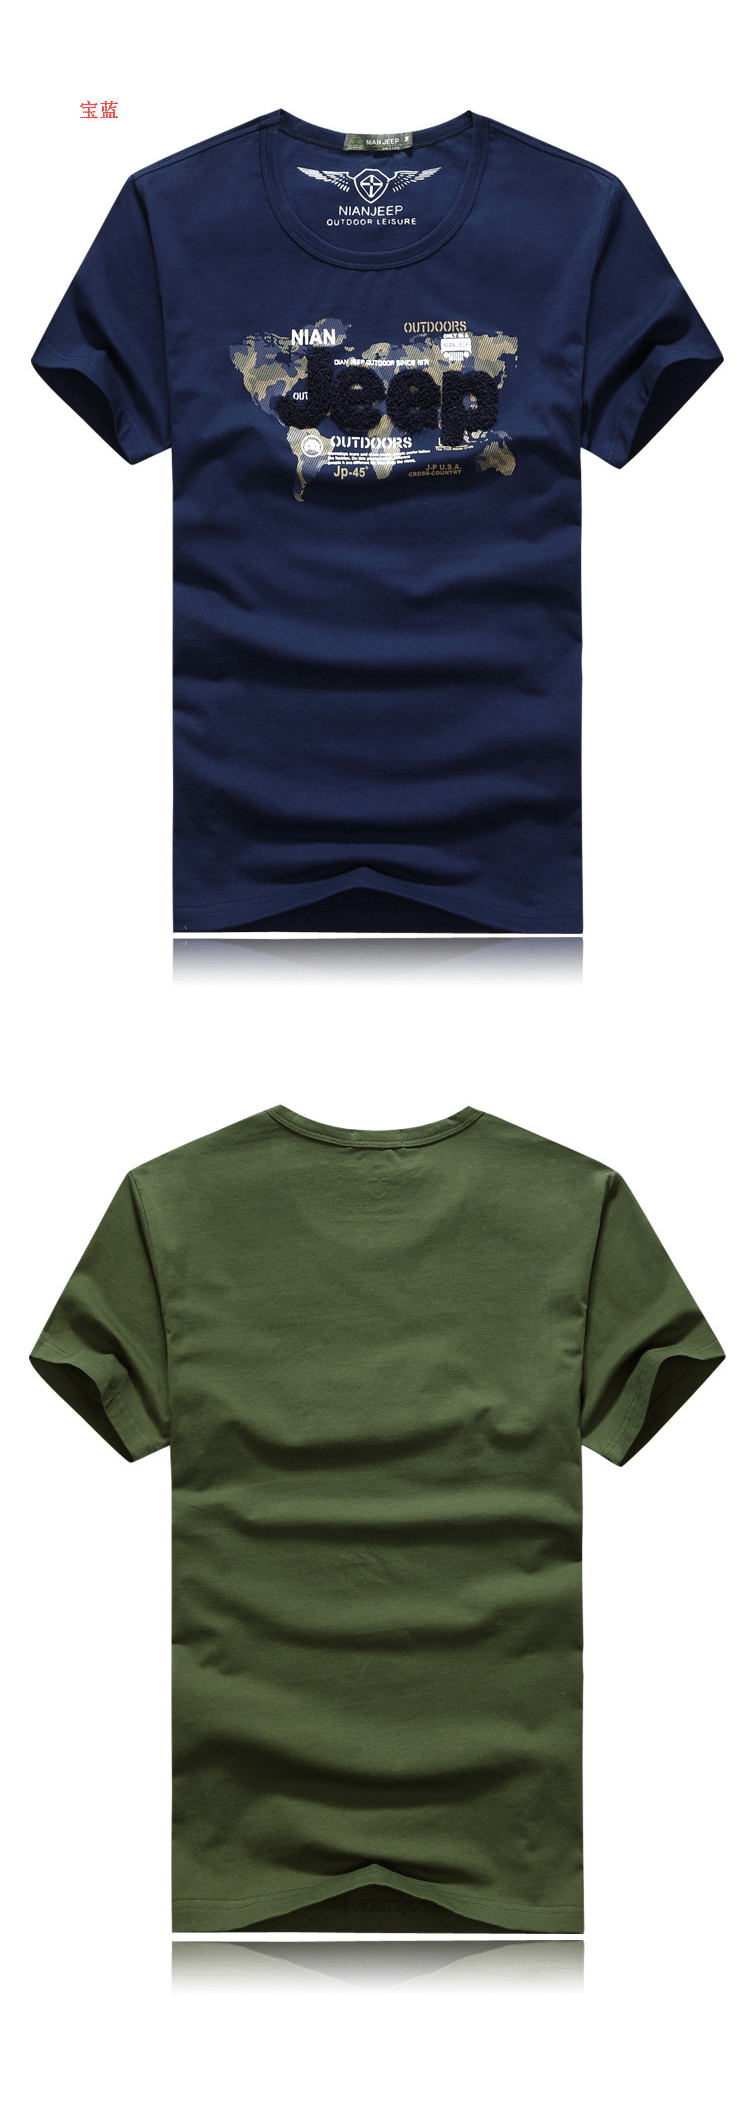 2件装】NIAN JEEP/吉普盾 夏季新款纯棉圆领T恤 男式短袖T恤9329